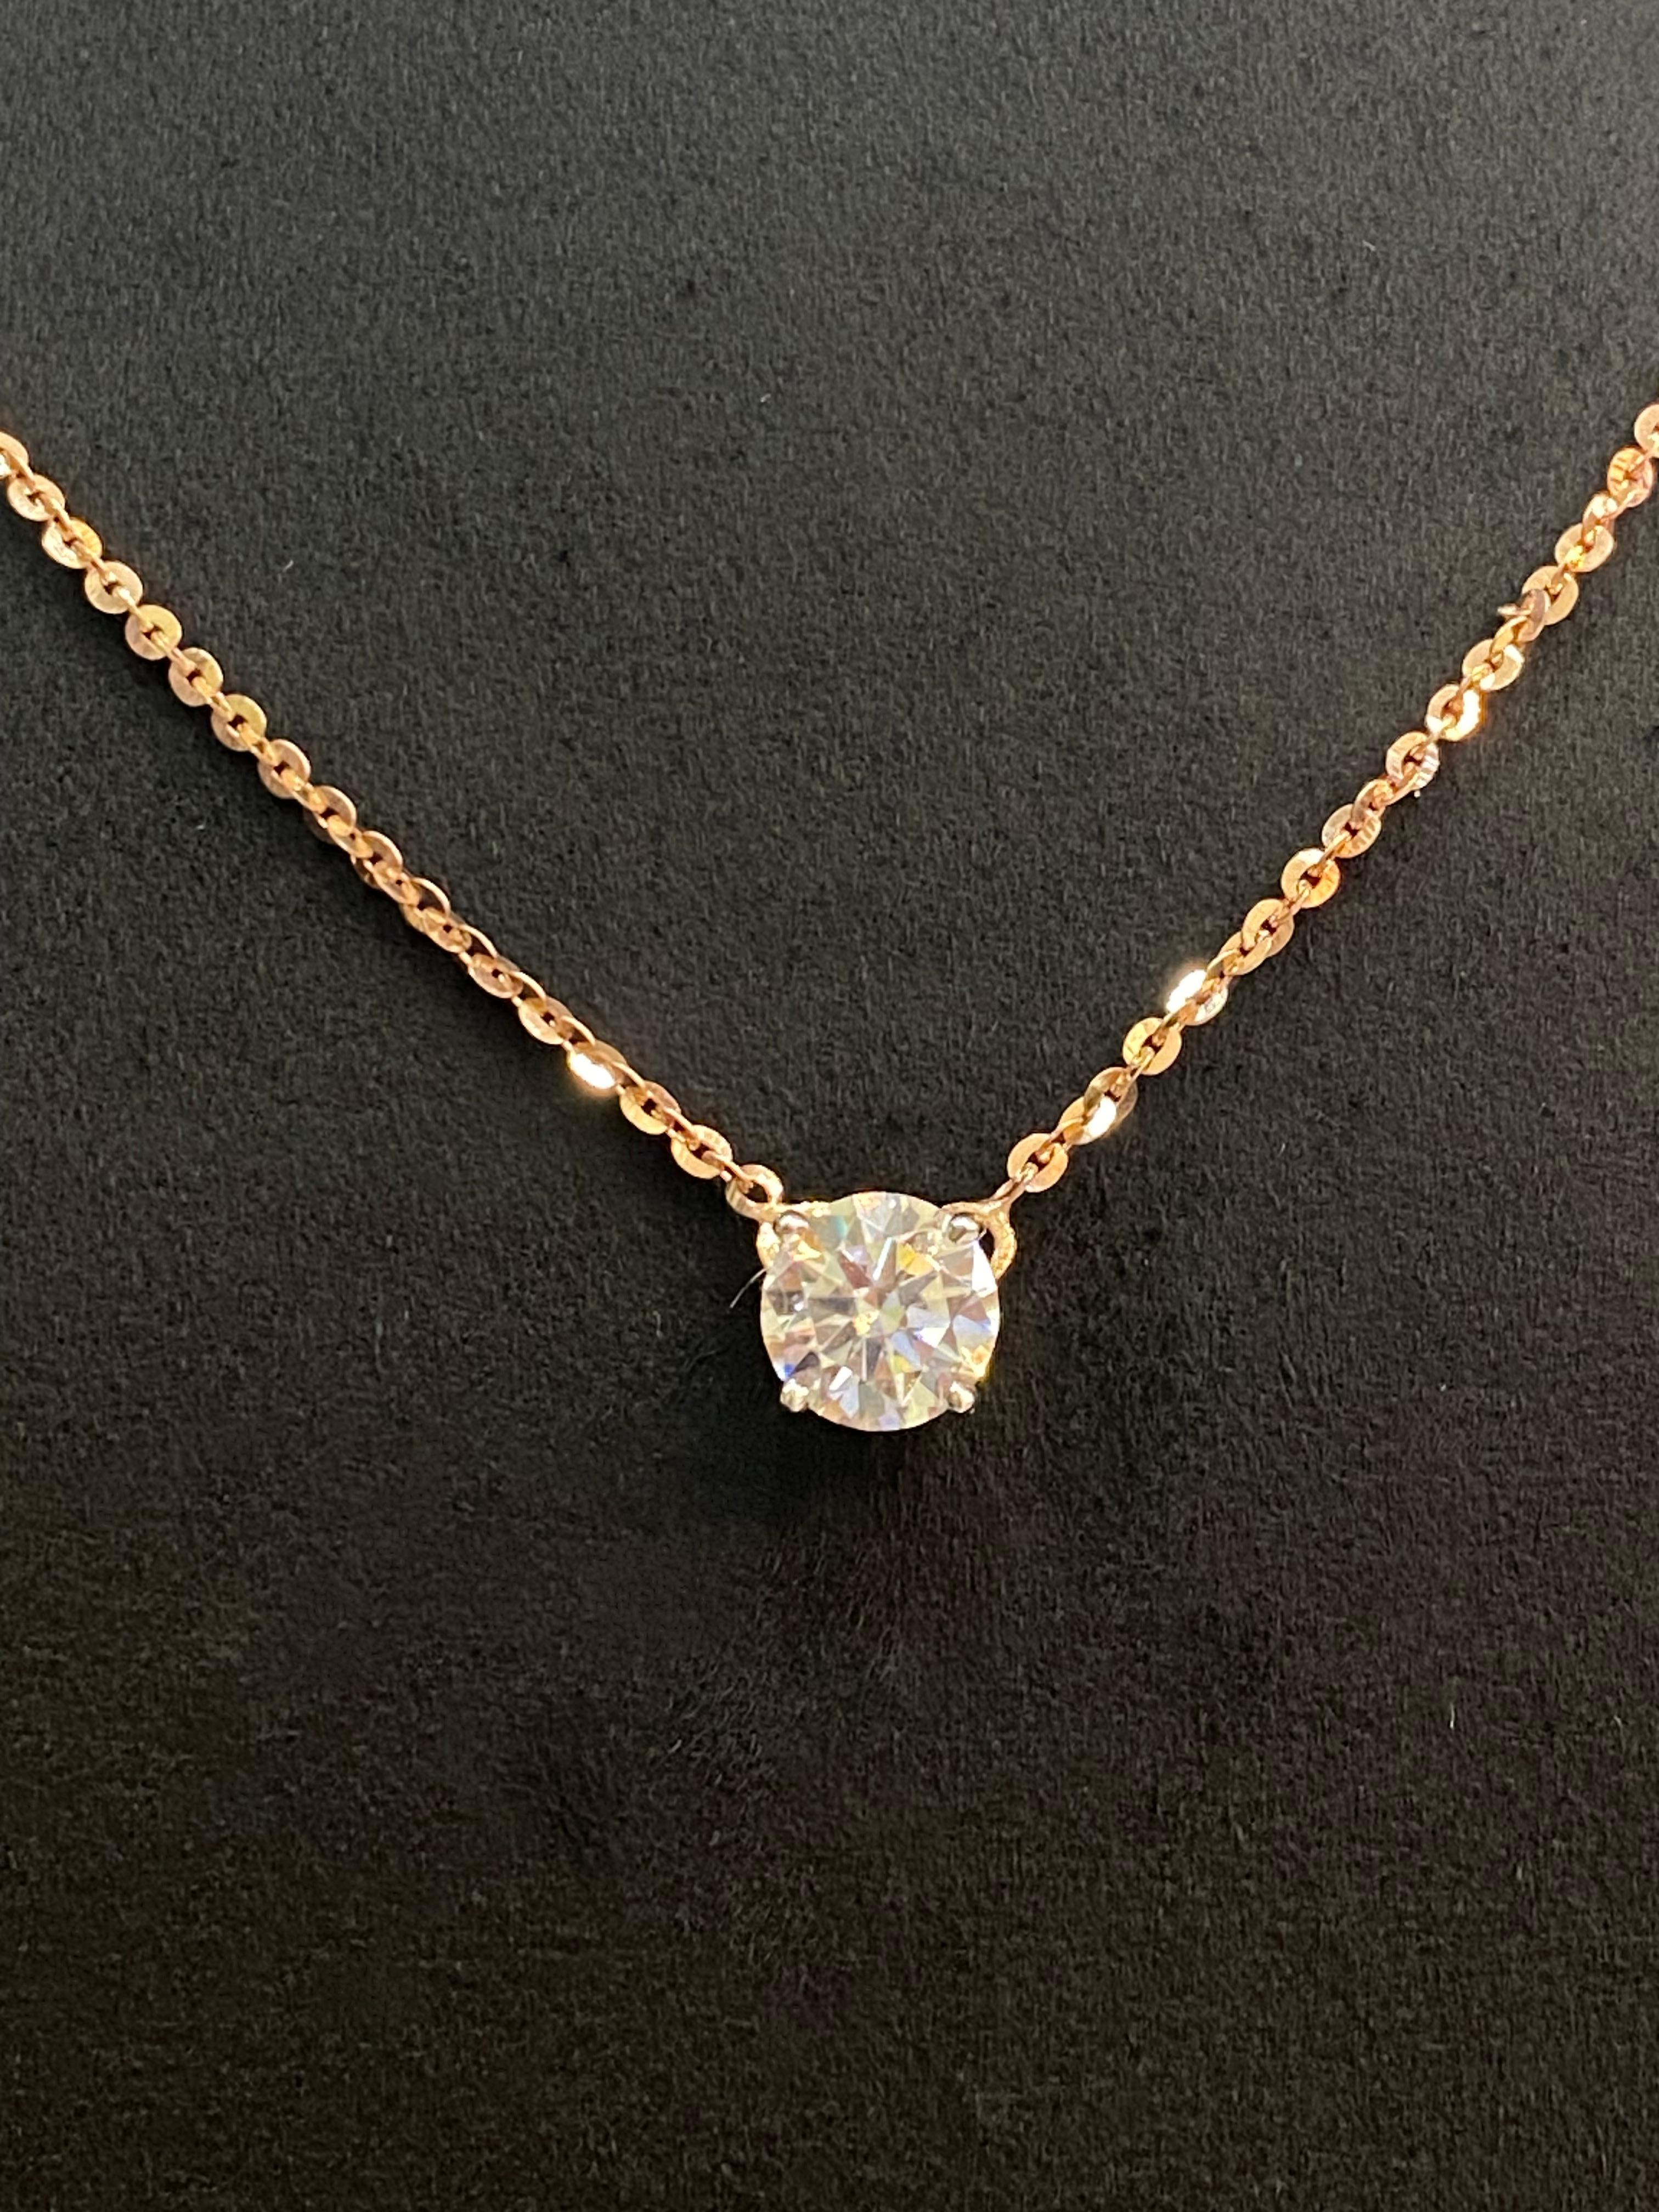 Genießen Sie den Glanz und die Anziehungskraft dieser atemberaubenden GIA-zertifizierten 1,50 Karat F/VS1 Solitär-Halskette mit rundem Diamant aus 18 Karat Gold. Er wurde sorgfältig gefertigt, um Sie mit Brillanz zu schmücken und verspricht, Sie mit